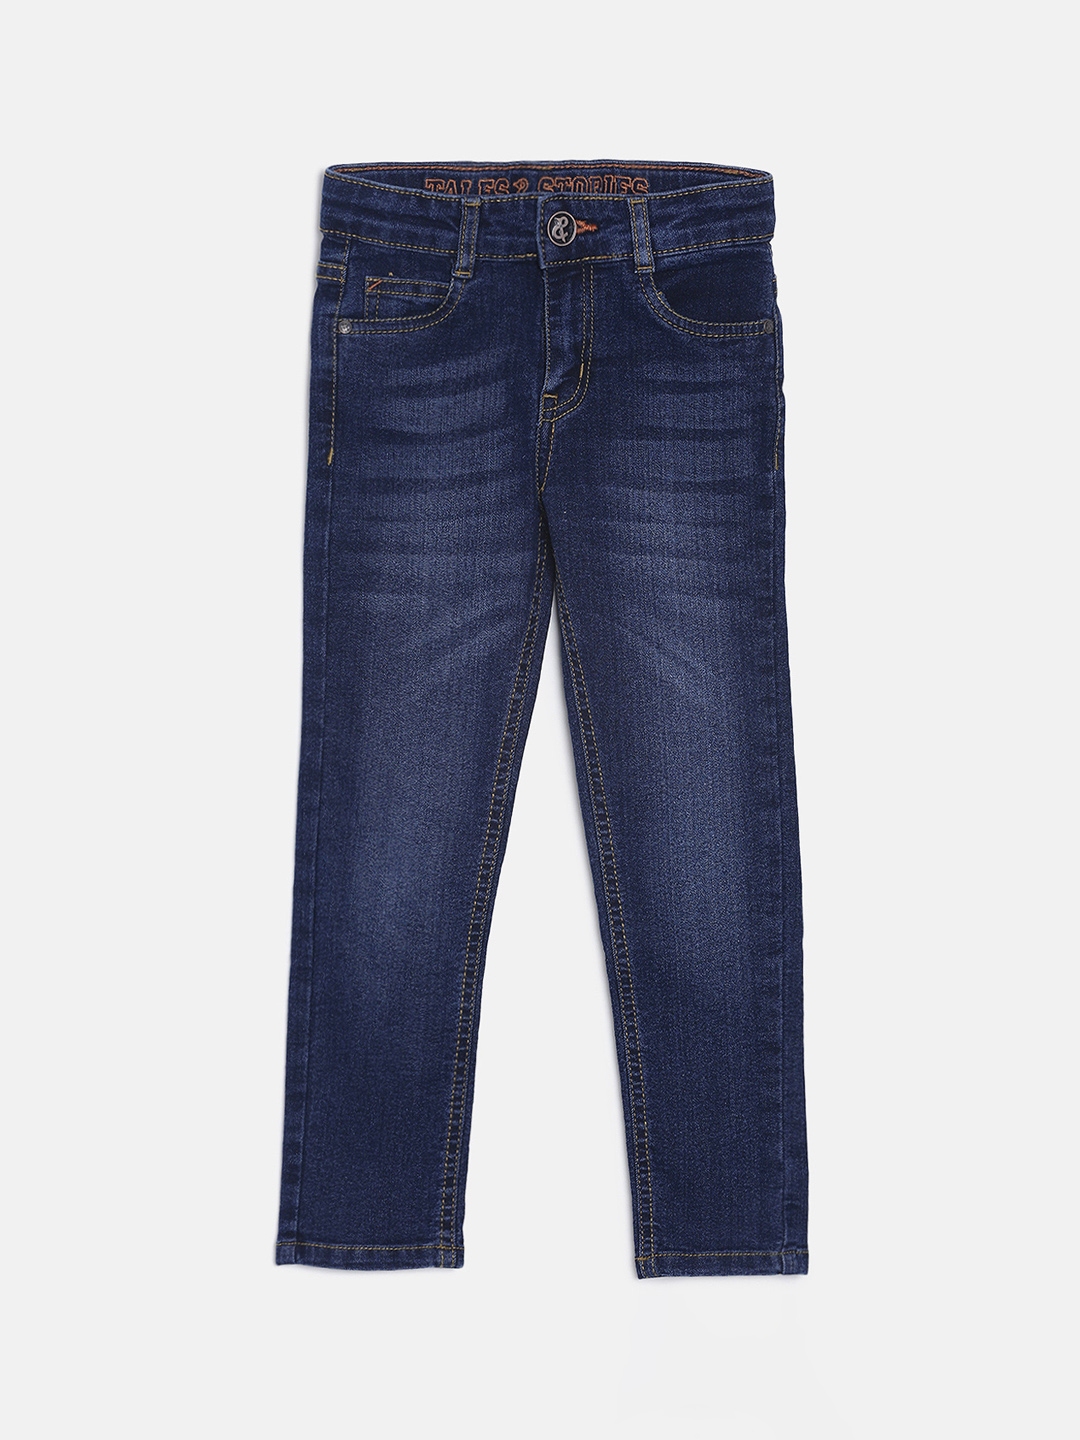 Buy TALES & STORIES Boys Blue Slim Fit Mid Rise Clean Look Jeans ...